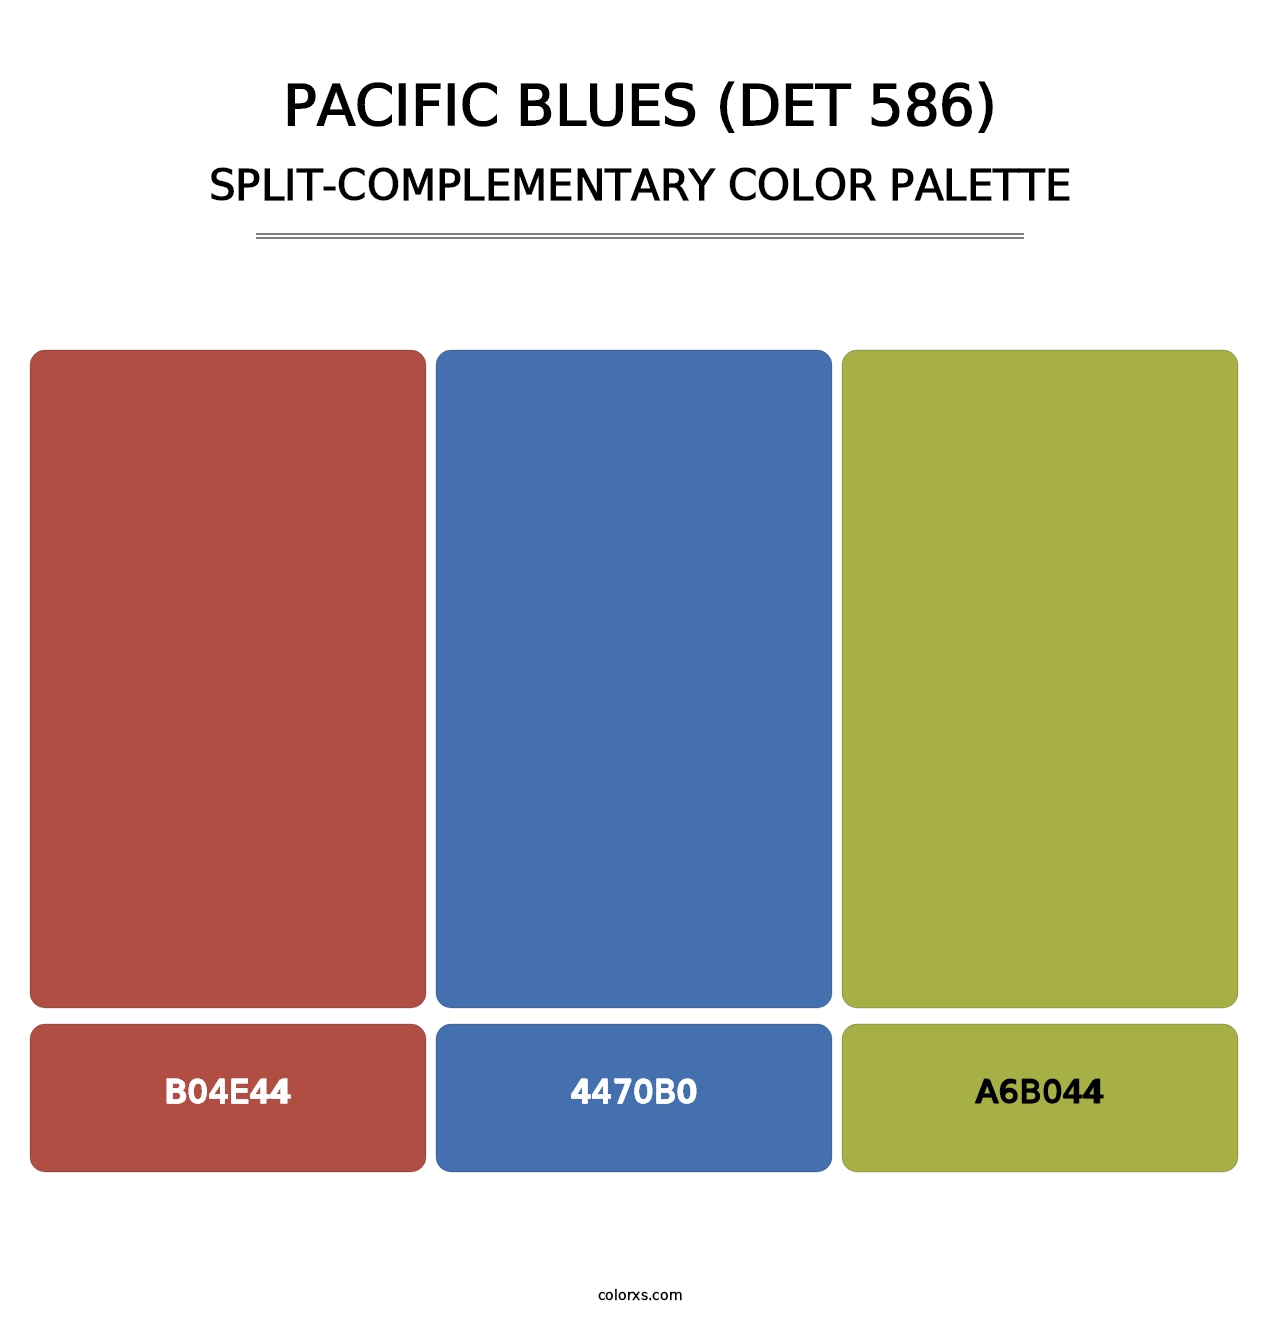 Pacific Blues (DET 586) - Split-Complementary Color Palette